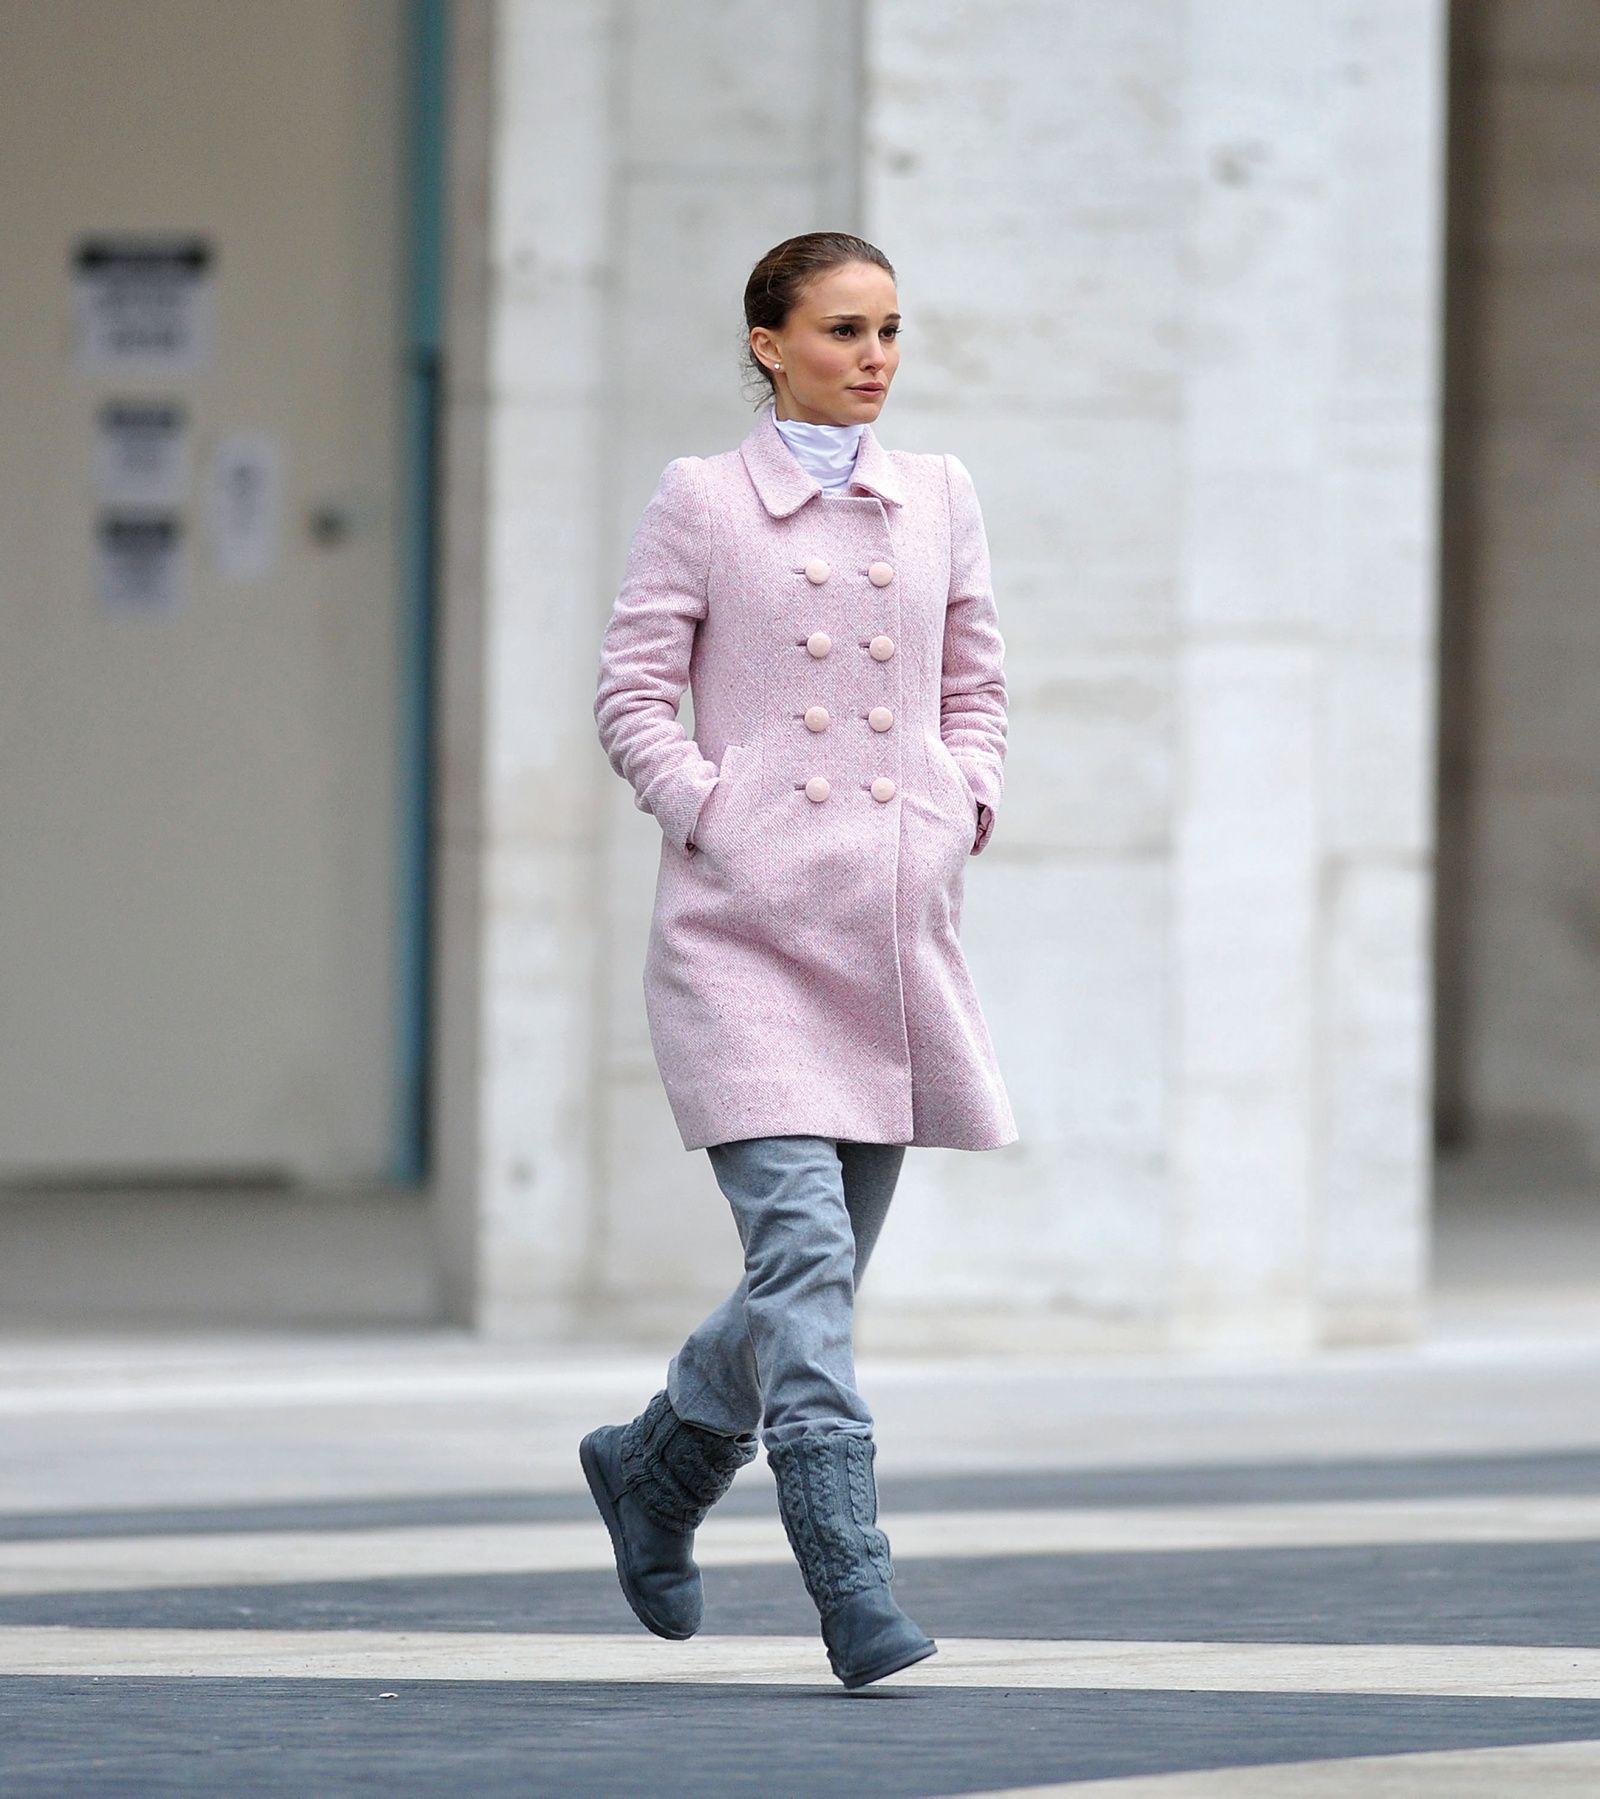 léxico Excelente Canadá Copia el look con abrigo rosa de Natalie Portman